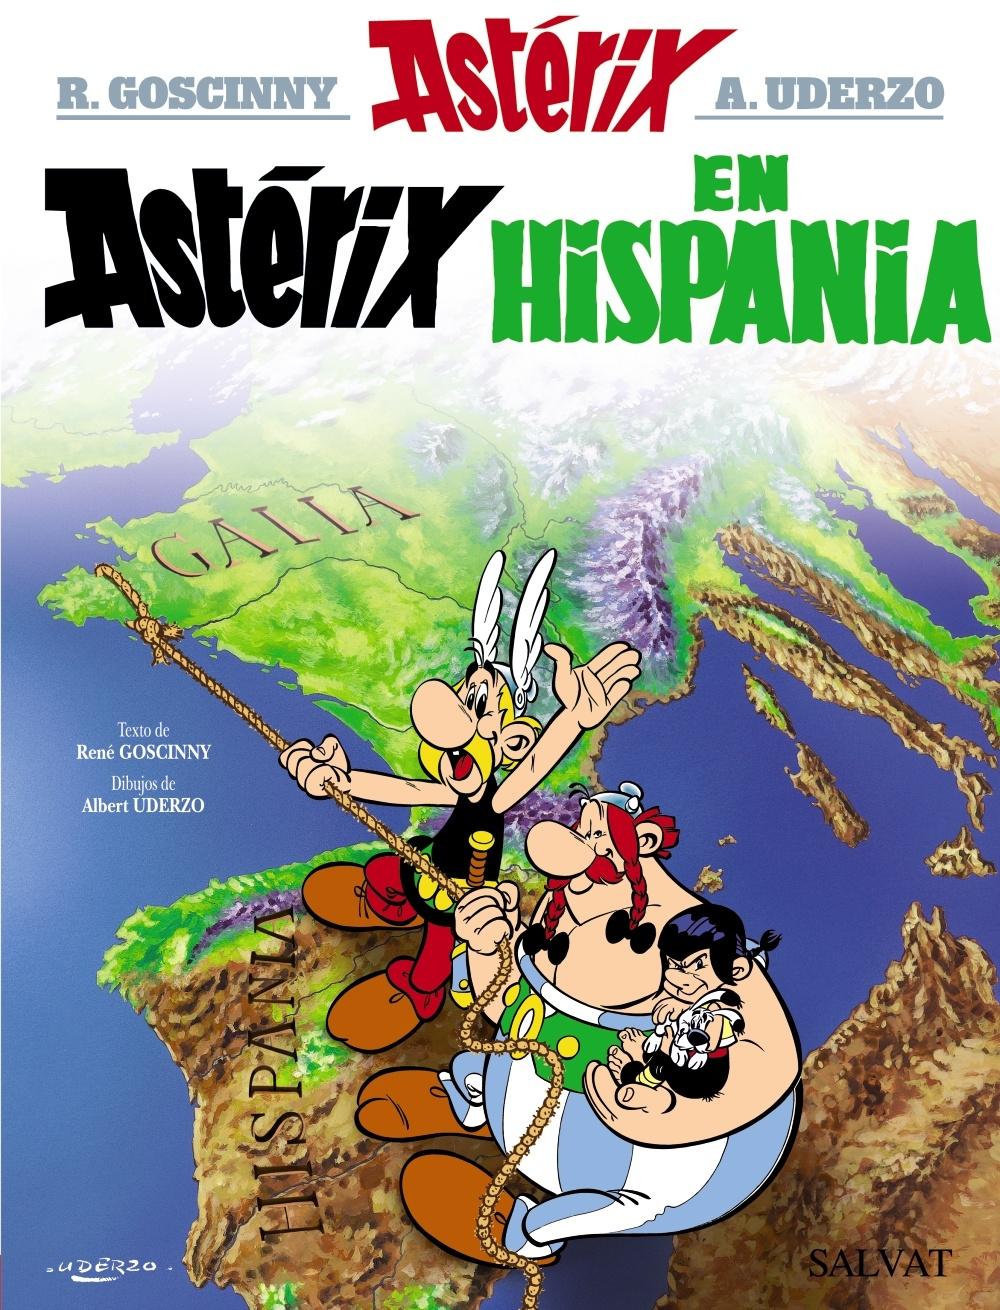 Astérix en Hispania "Astérix 14"